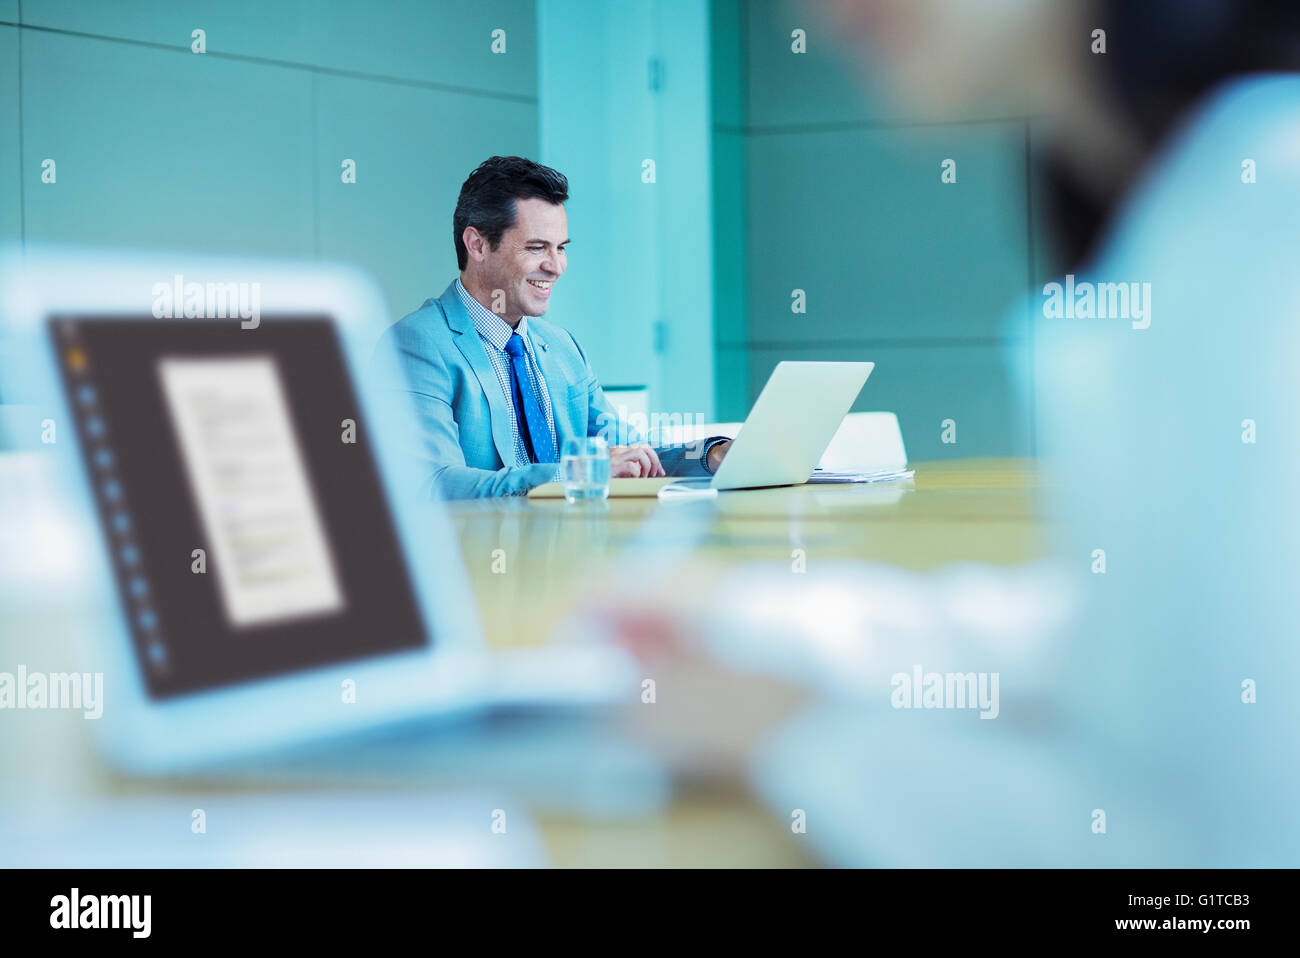 Smiling businessman working at laptop dans la salle de conférence Banque D'Images